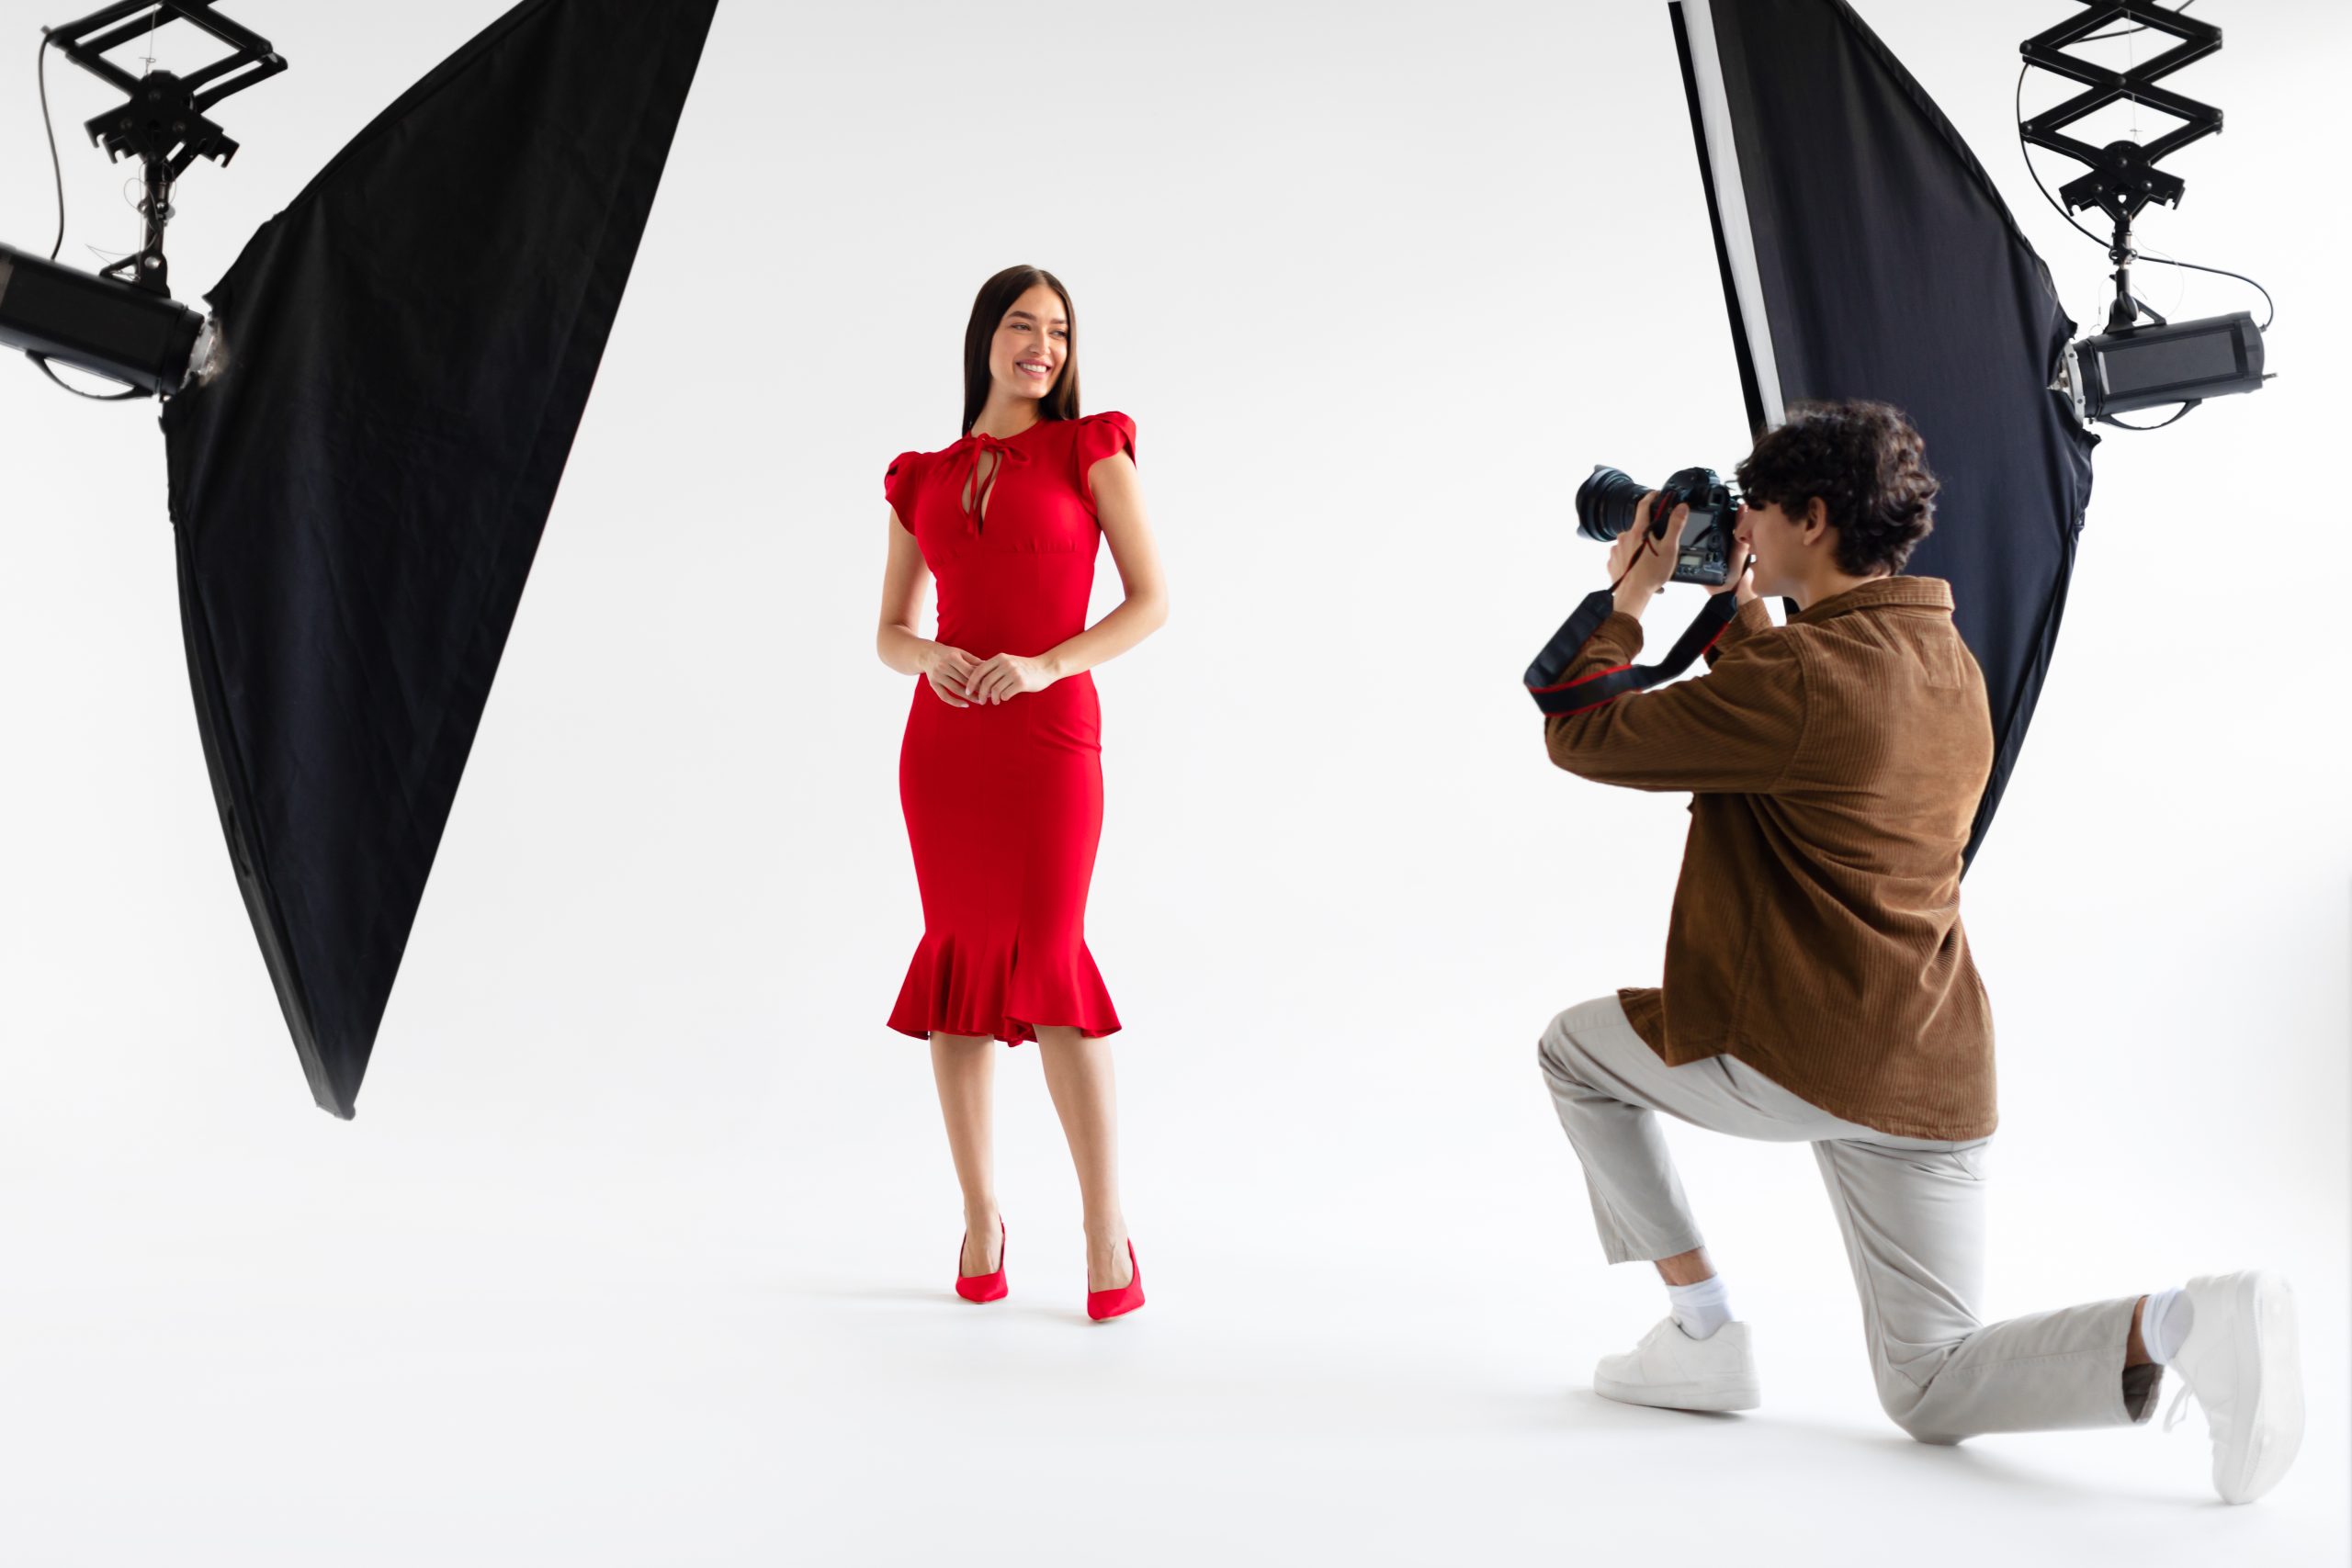 Séance photo de mode. Photographe professionnel prenant des photos d'un beau modèle féminin en robe rouge élégante, posant sur fond blanc dans un studio photo avec un équipement d'éclairage moderne
